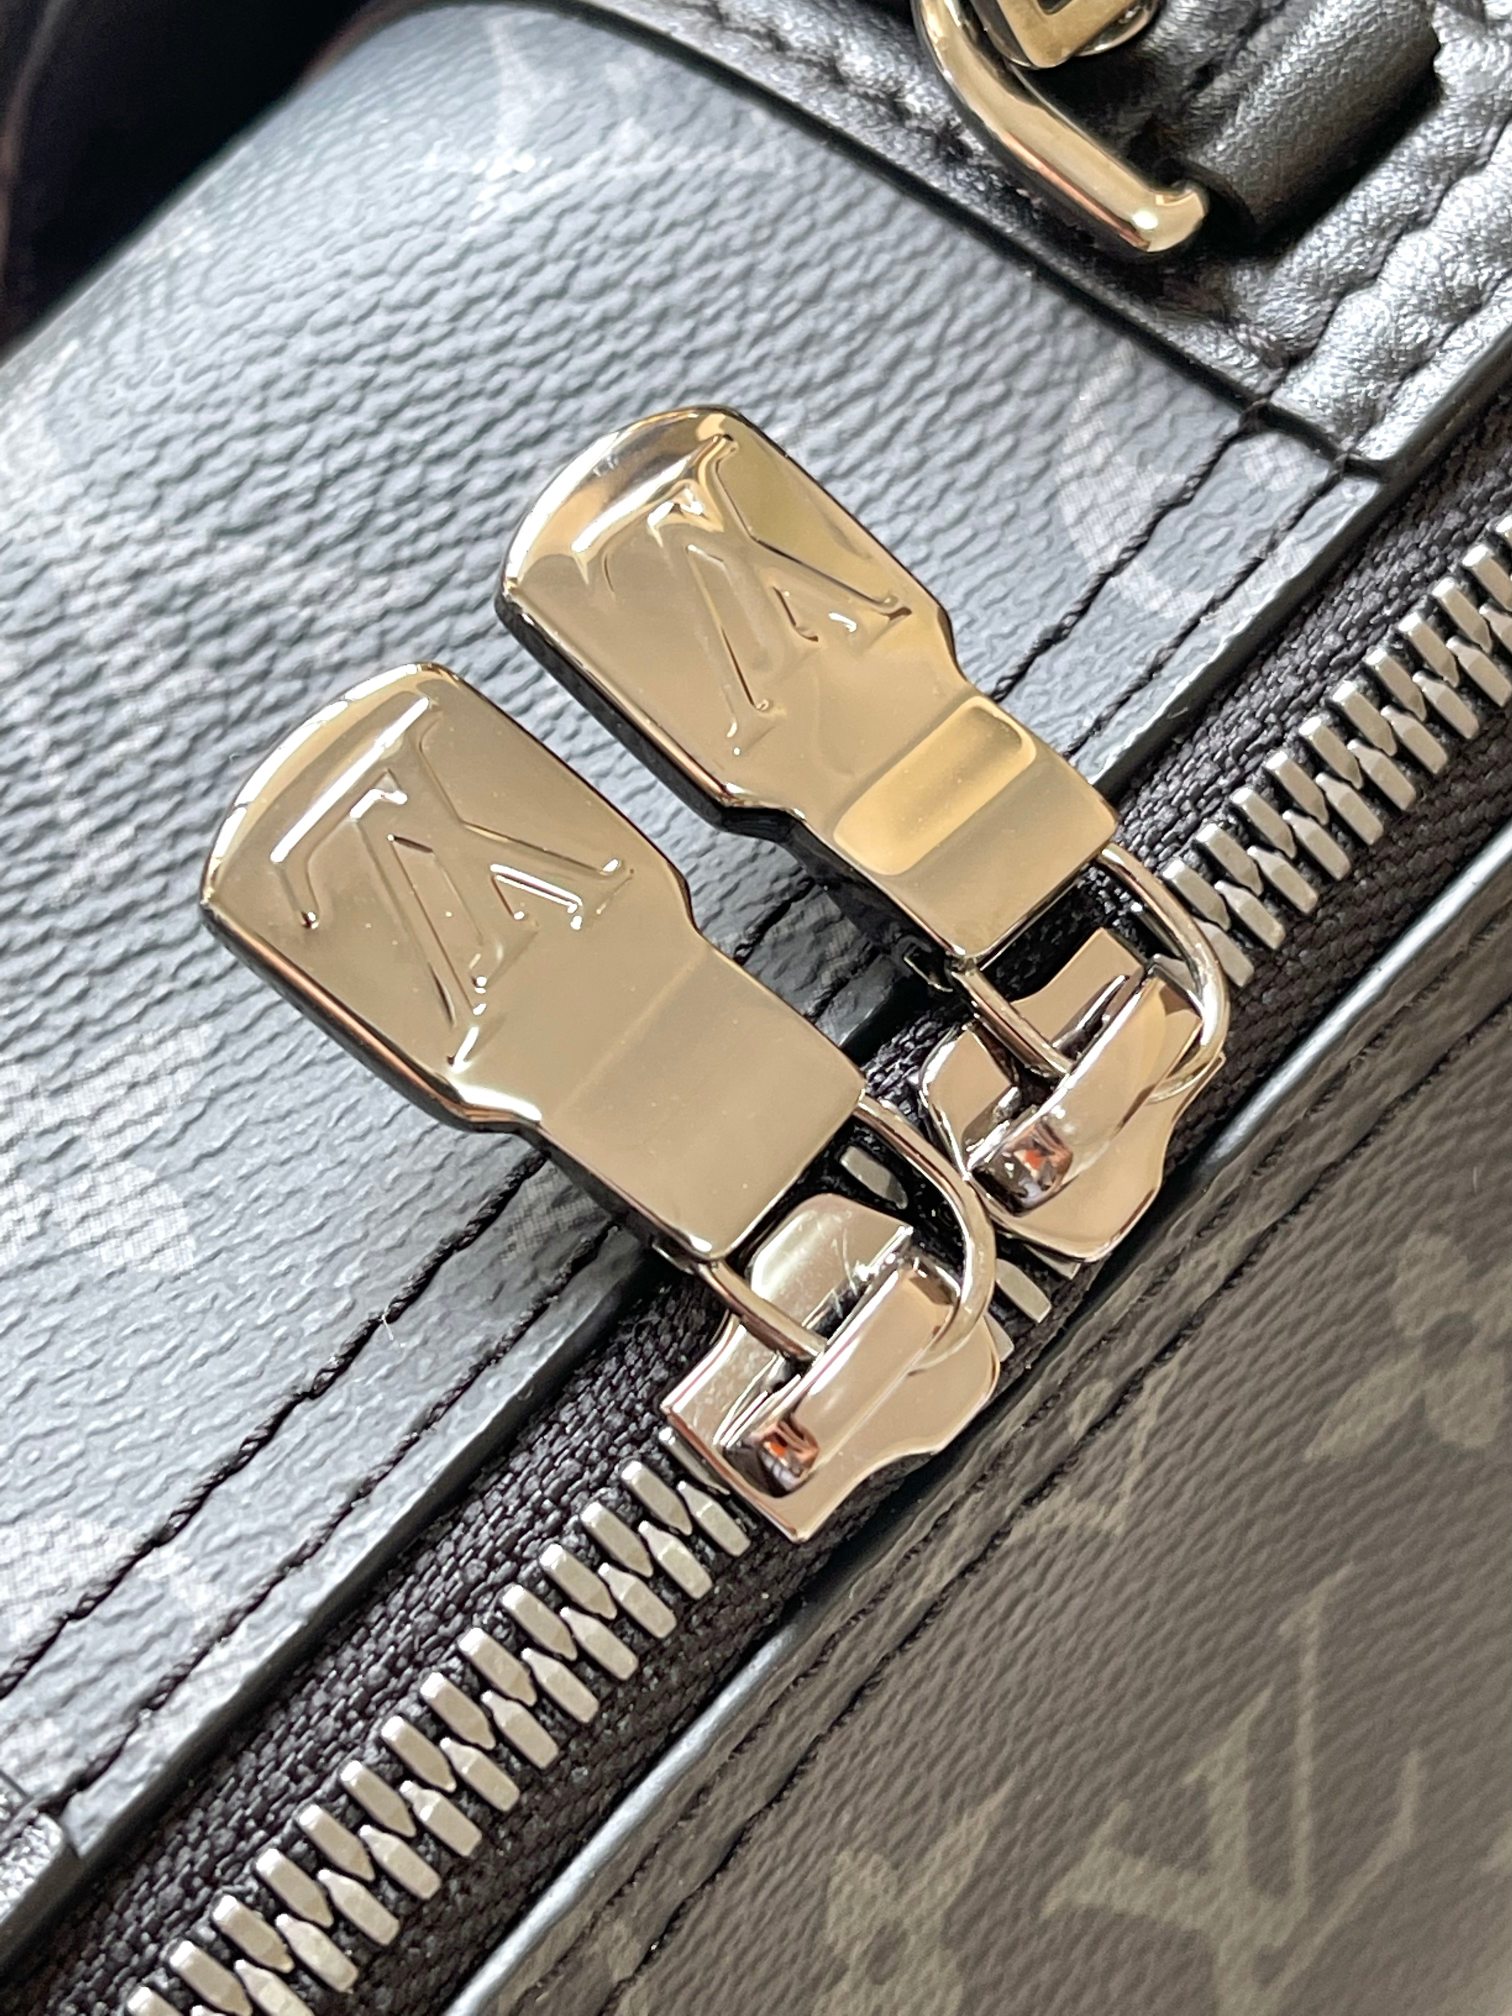 特级MB原厂皮CITYKEEPALL手袋型号M45936芯片版材料A+级全钢五金进口原厂皮包装全套特级免